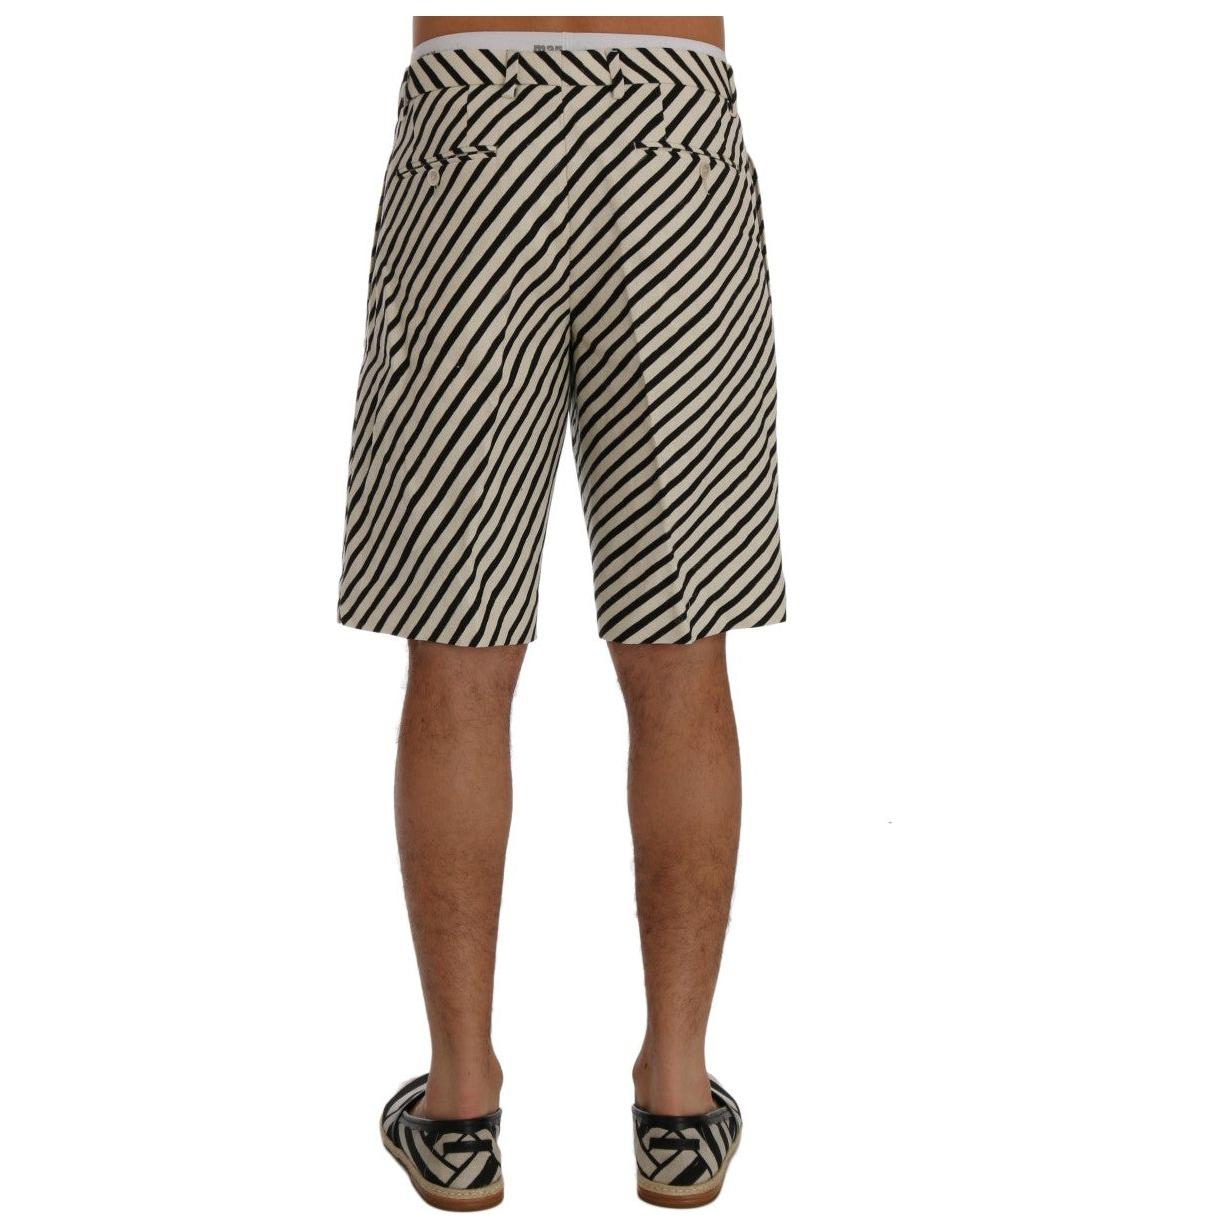 Dolce & Gabbana Striped Hemp Casual Shorts white-black-striped-hemp-casual-shorts 443695-white-black-striped-hemp-casual-shorts-2.jpg